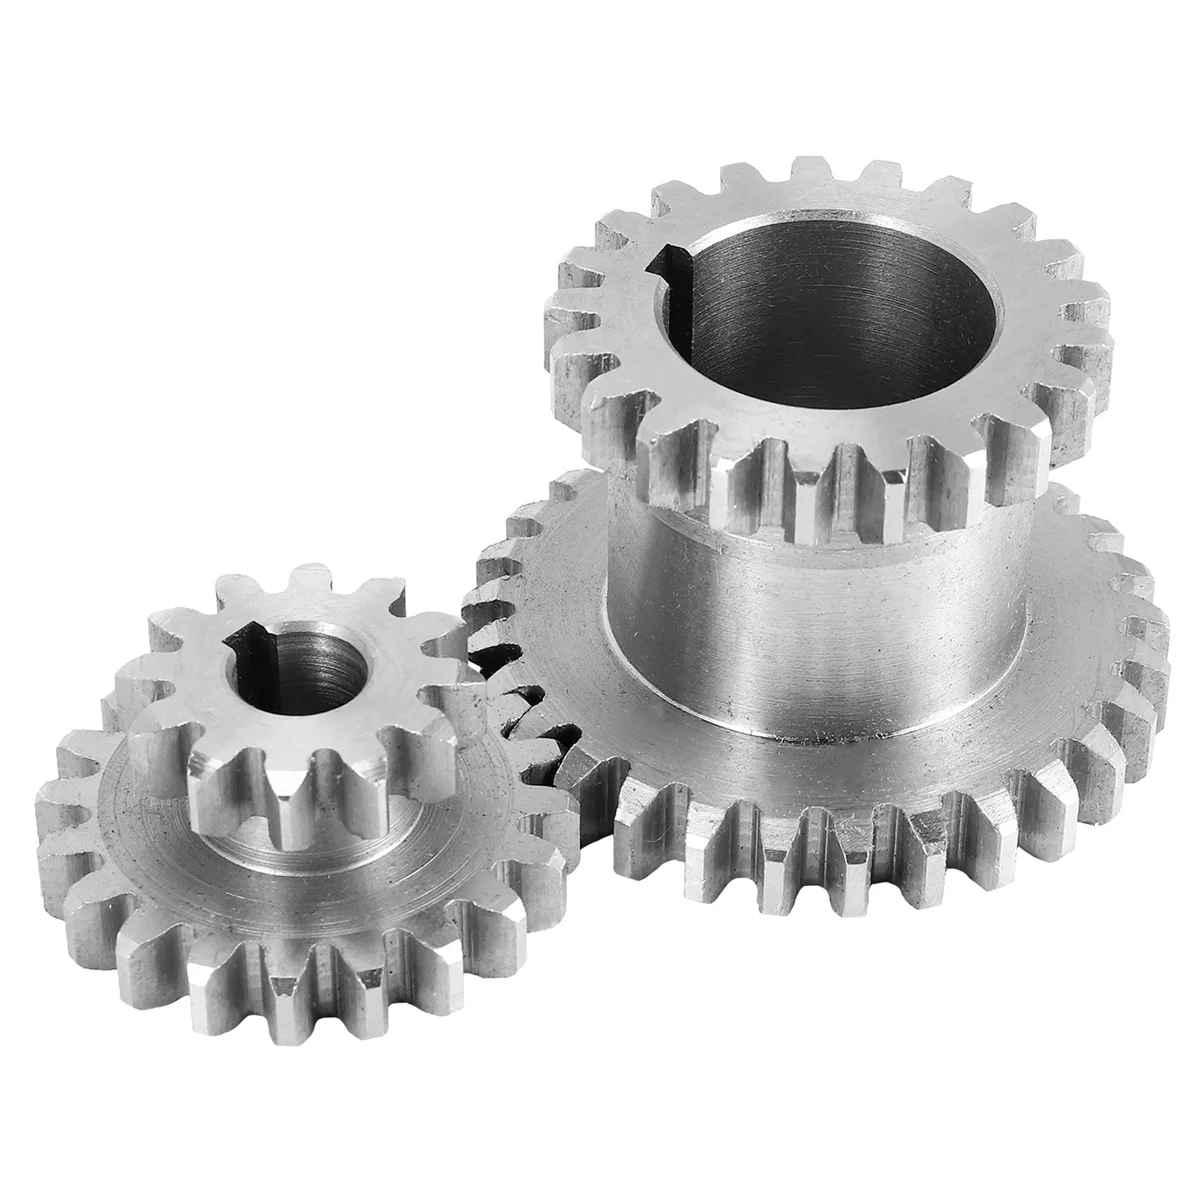 

2Pcs/Set Cj0618 Teeth T29Xt21 T20Xt12 Dual Dears Metal Lathe Gear Duplicate Gear Double Gear